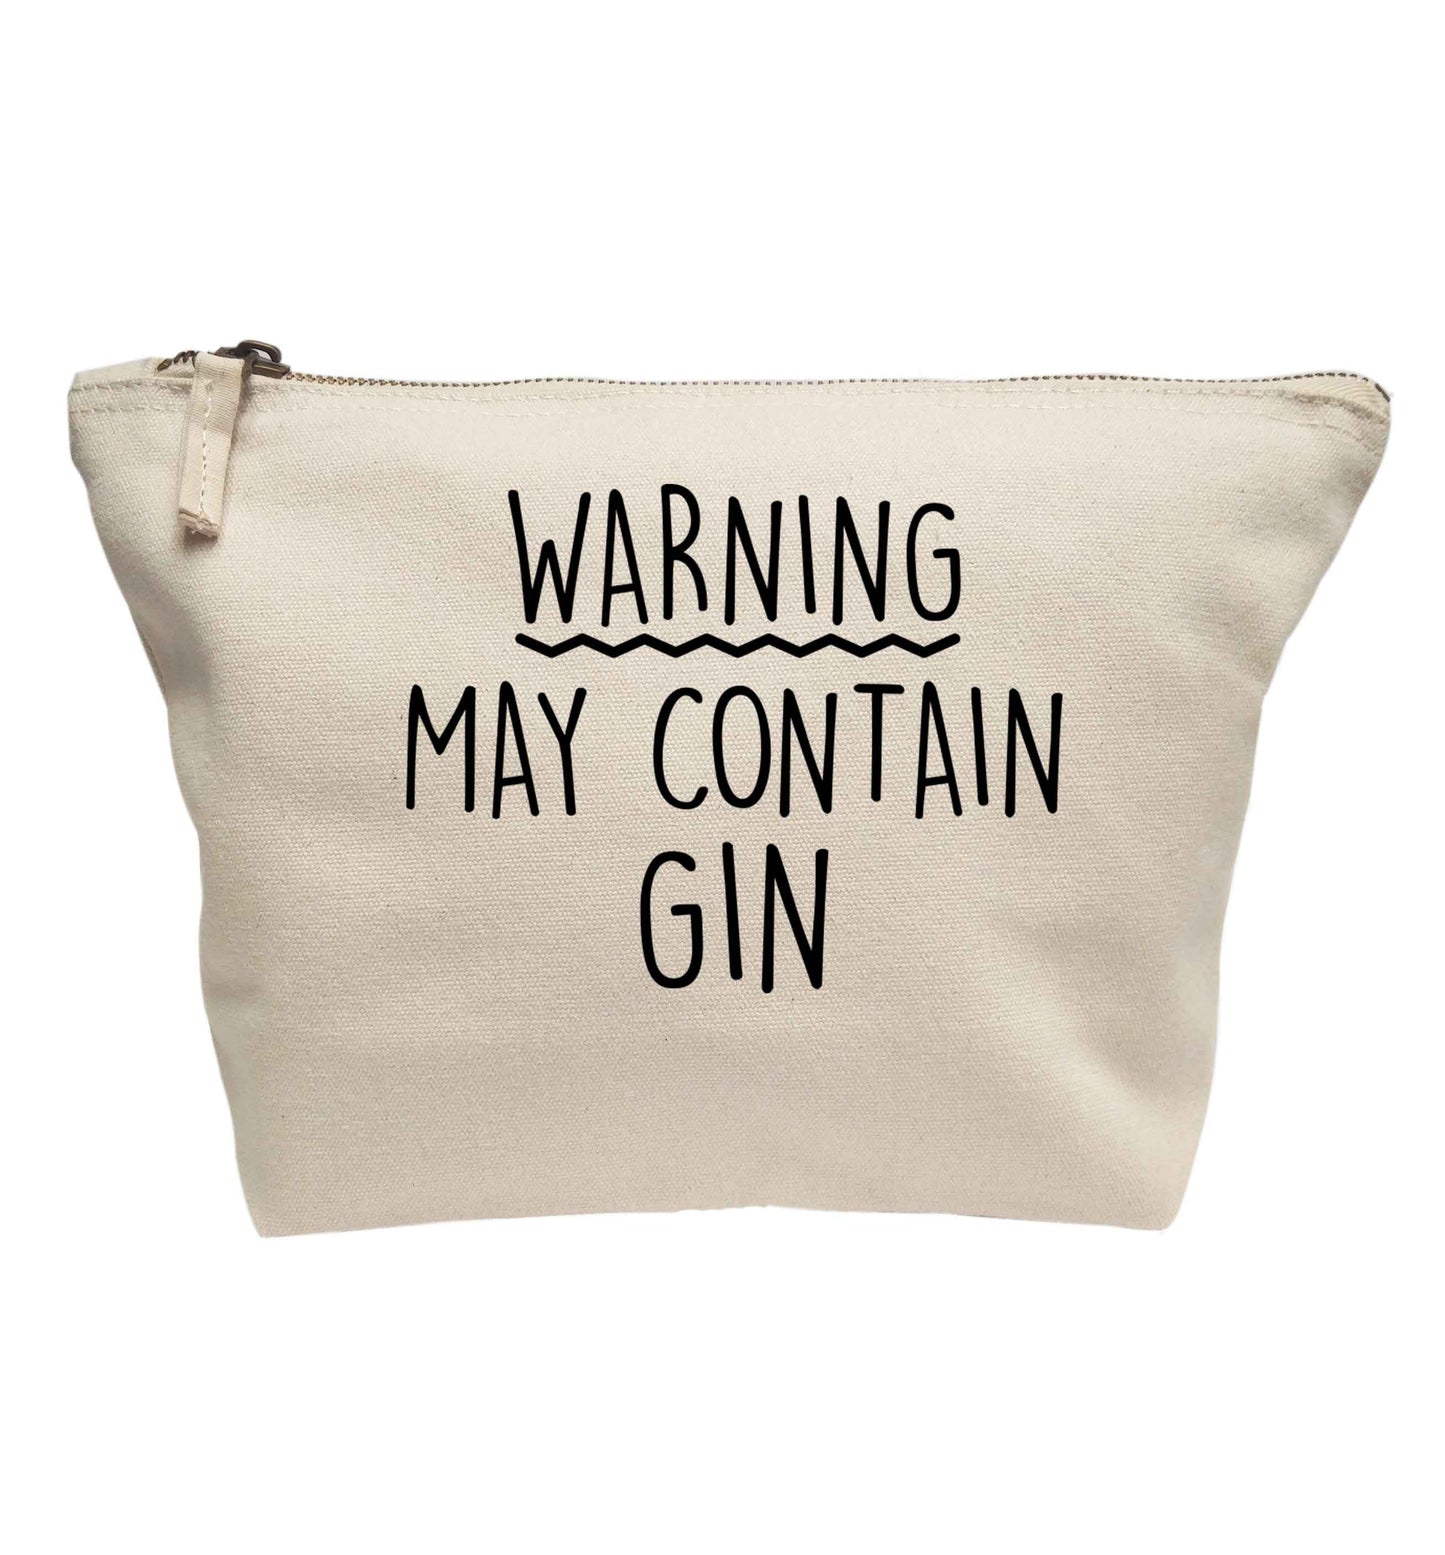 Warning may contain gin | makeup / wash bag